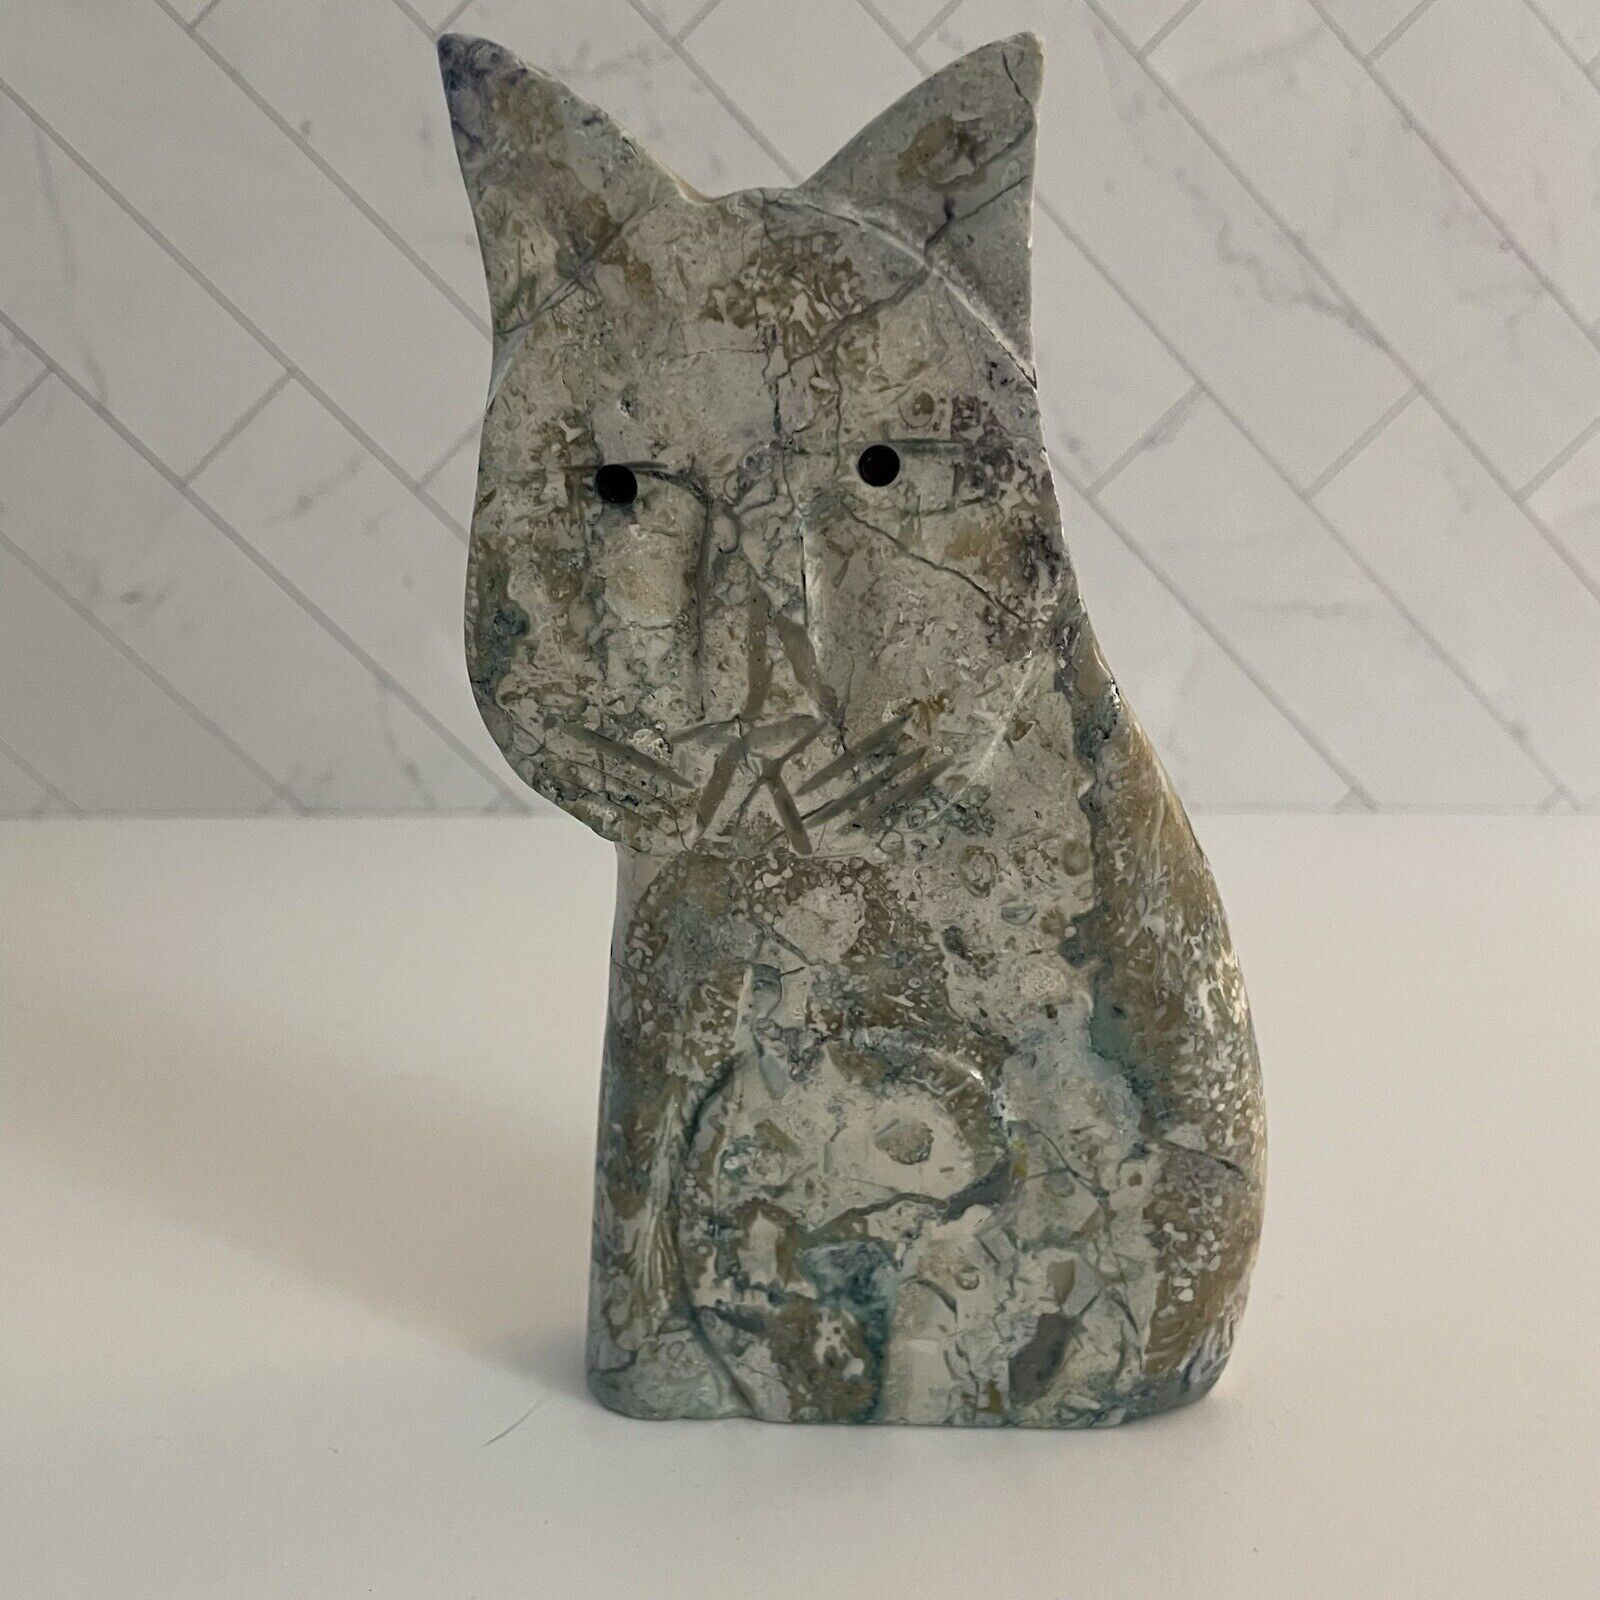 Laurel Burch Style Cat Ceramic Stone Figurine 6”